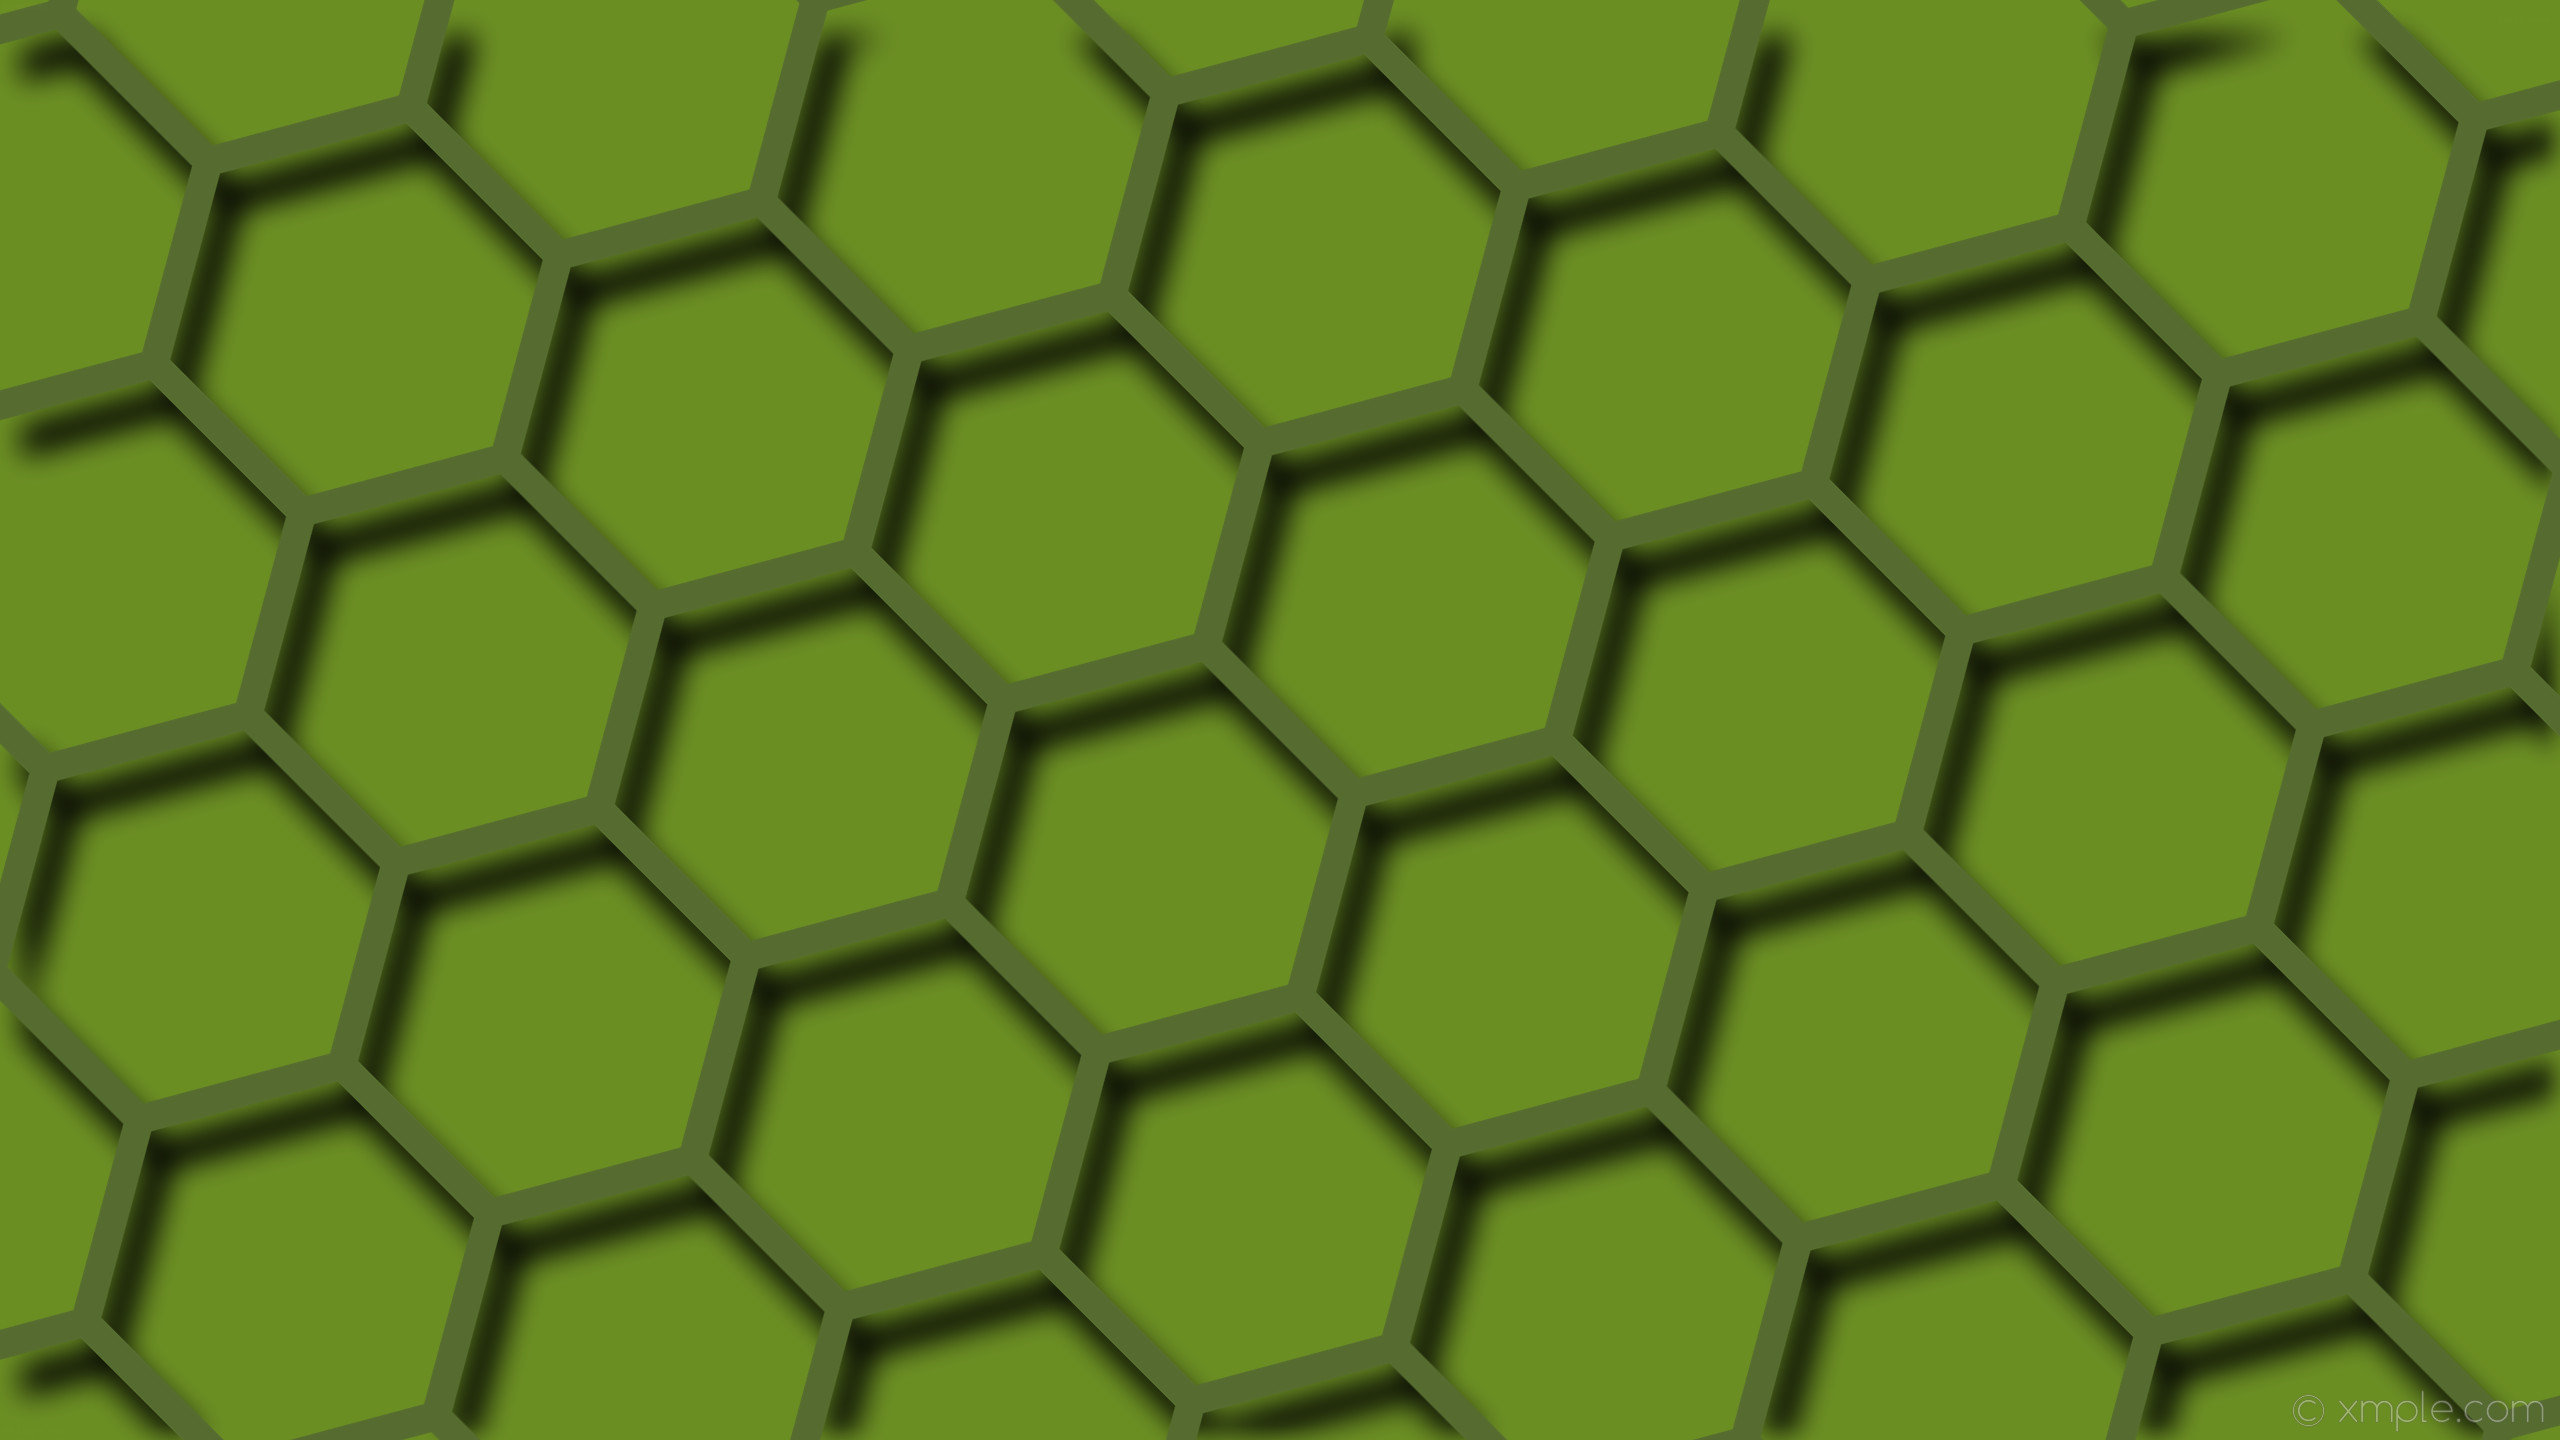 2560x1440 wallpaper beehive green hexagon drop shadow dark olive green olive drab  #556b2f #6b8e23 45